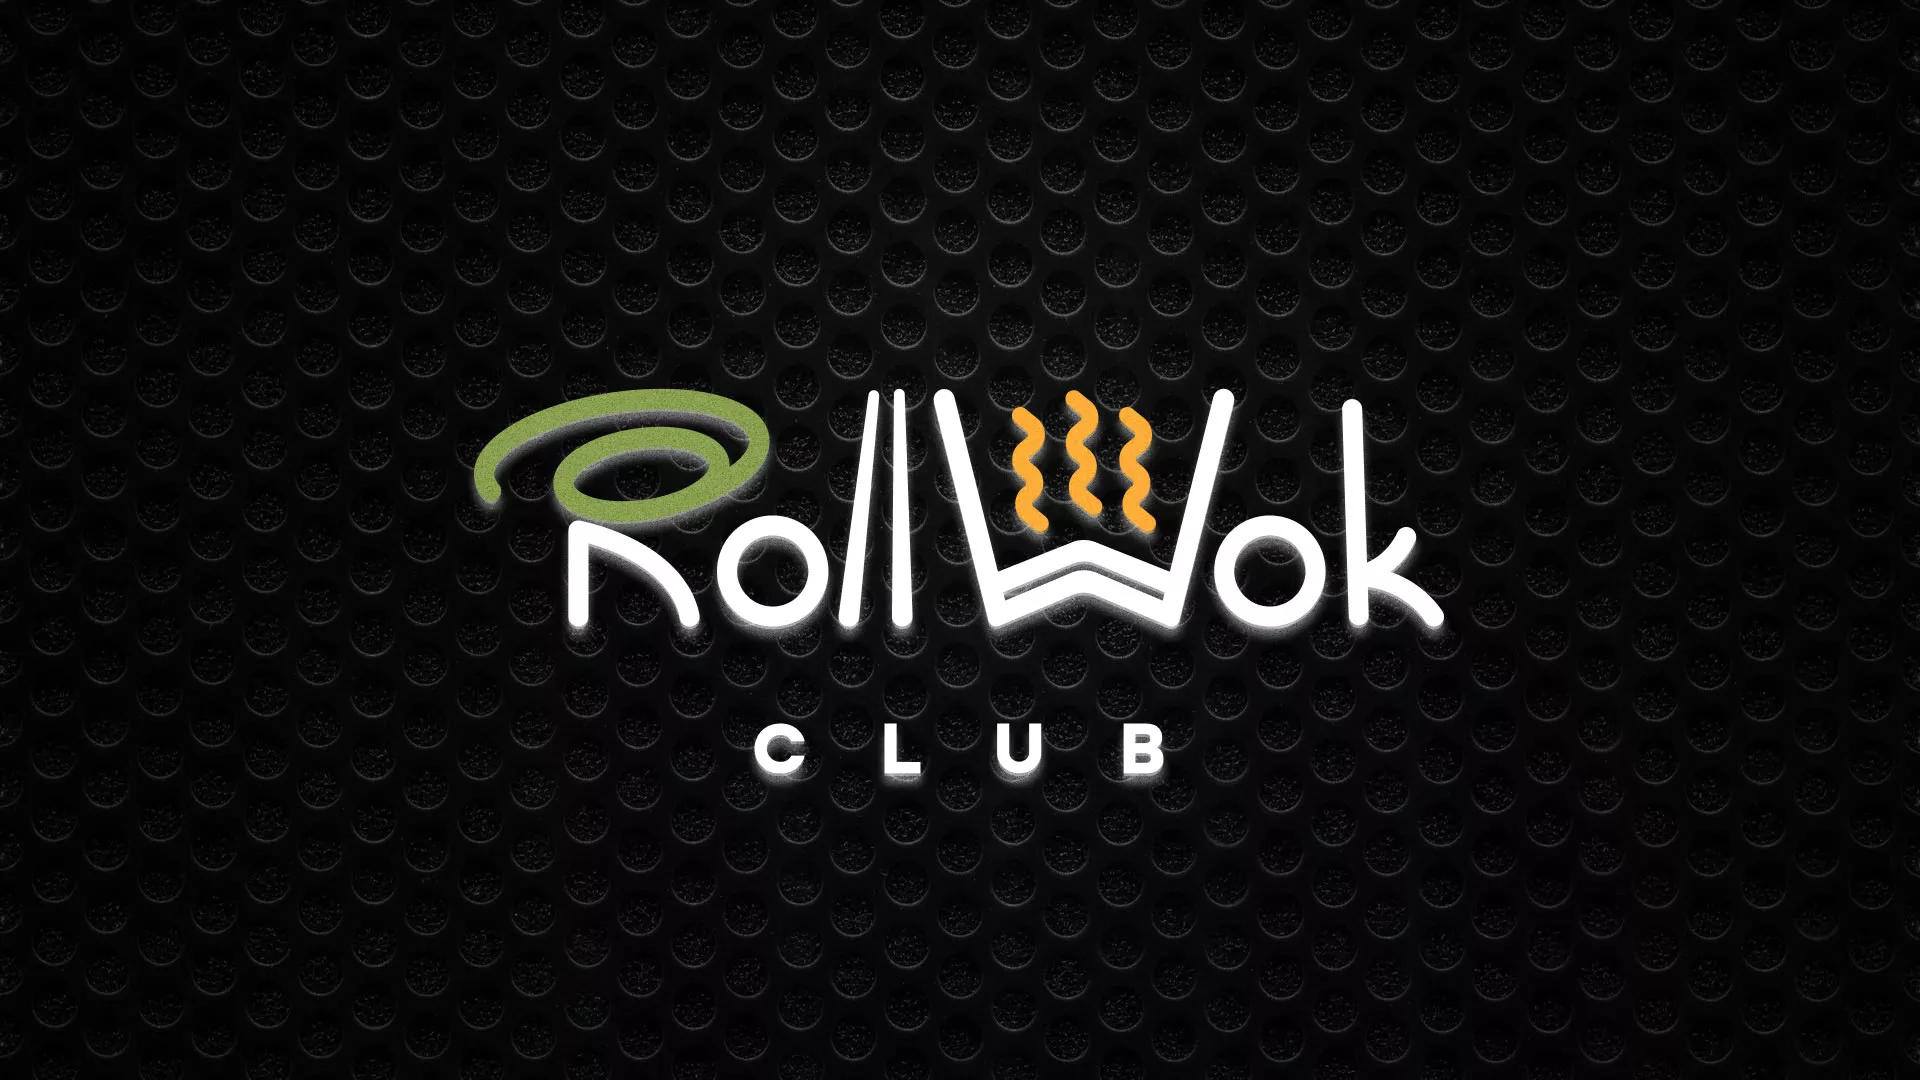 Брендирование торговых точек суши-бара «Roll Wok Club» в Ефремове